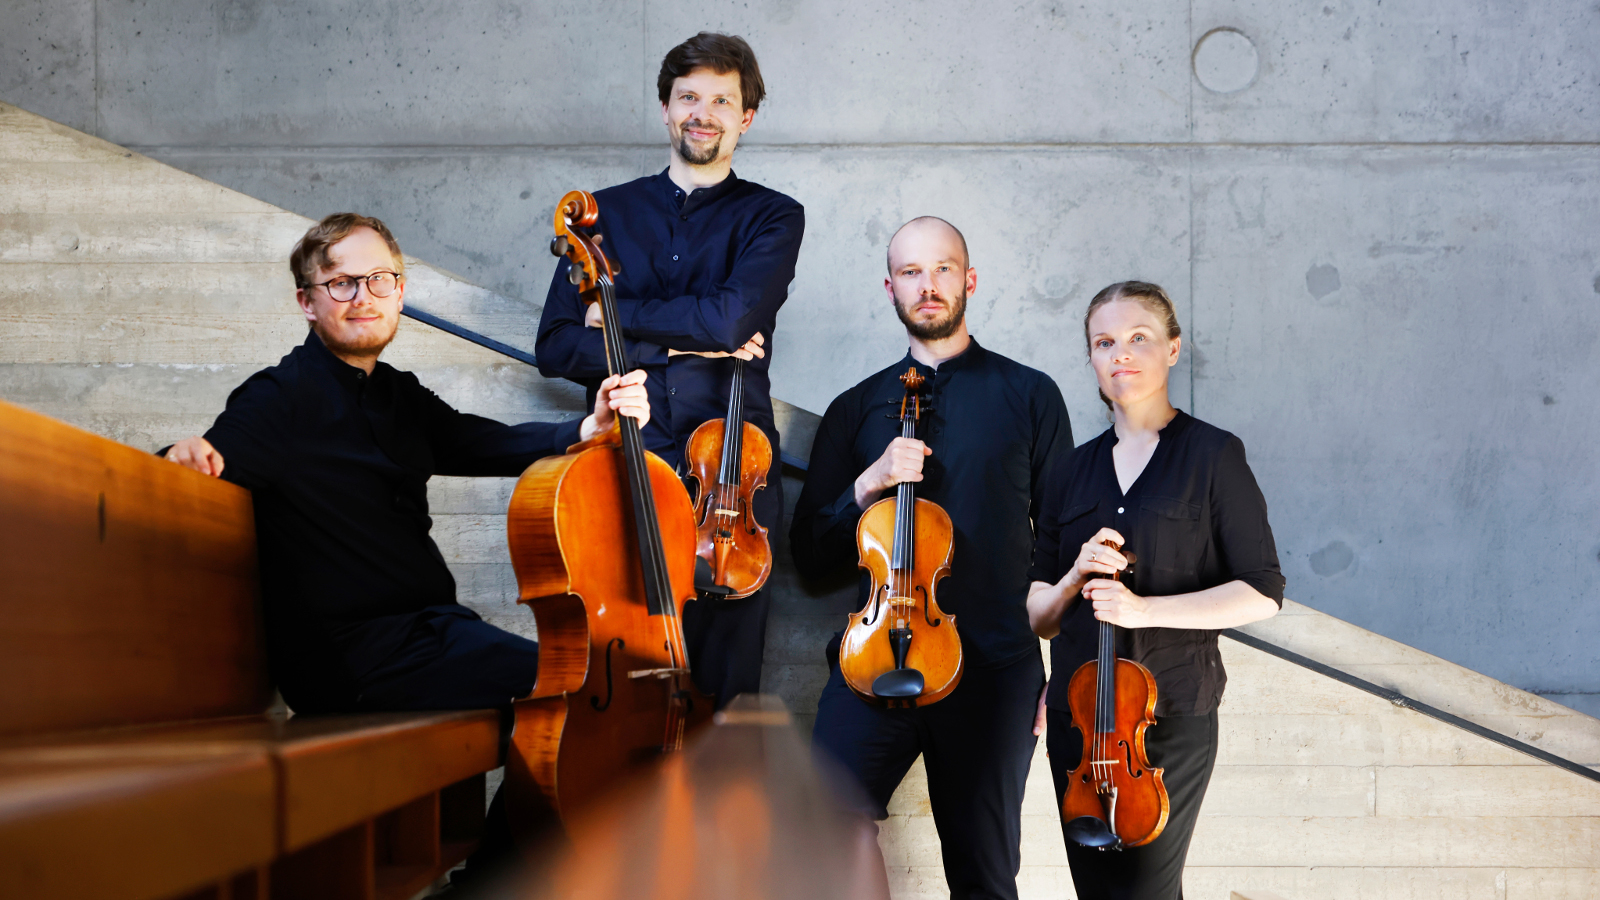 Kuvassa Kamus-kvartetin neljä soittajaa, joista vasemmalla oleva mies istuu ruskealla sohvalla ja pitää kädellään pystyssä selloa. Hänen vieressään oikealla seisoo mies viulun kanssa ja hänen vieressään mies myös viulun kanssa. Oikealla on seisoo nainen viulun kanssa.